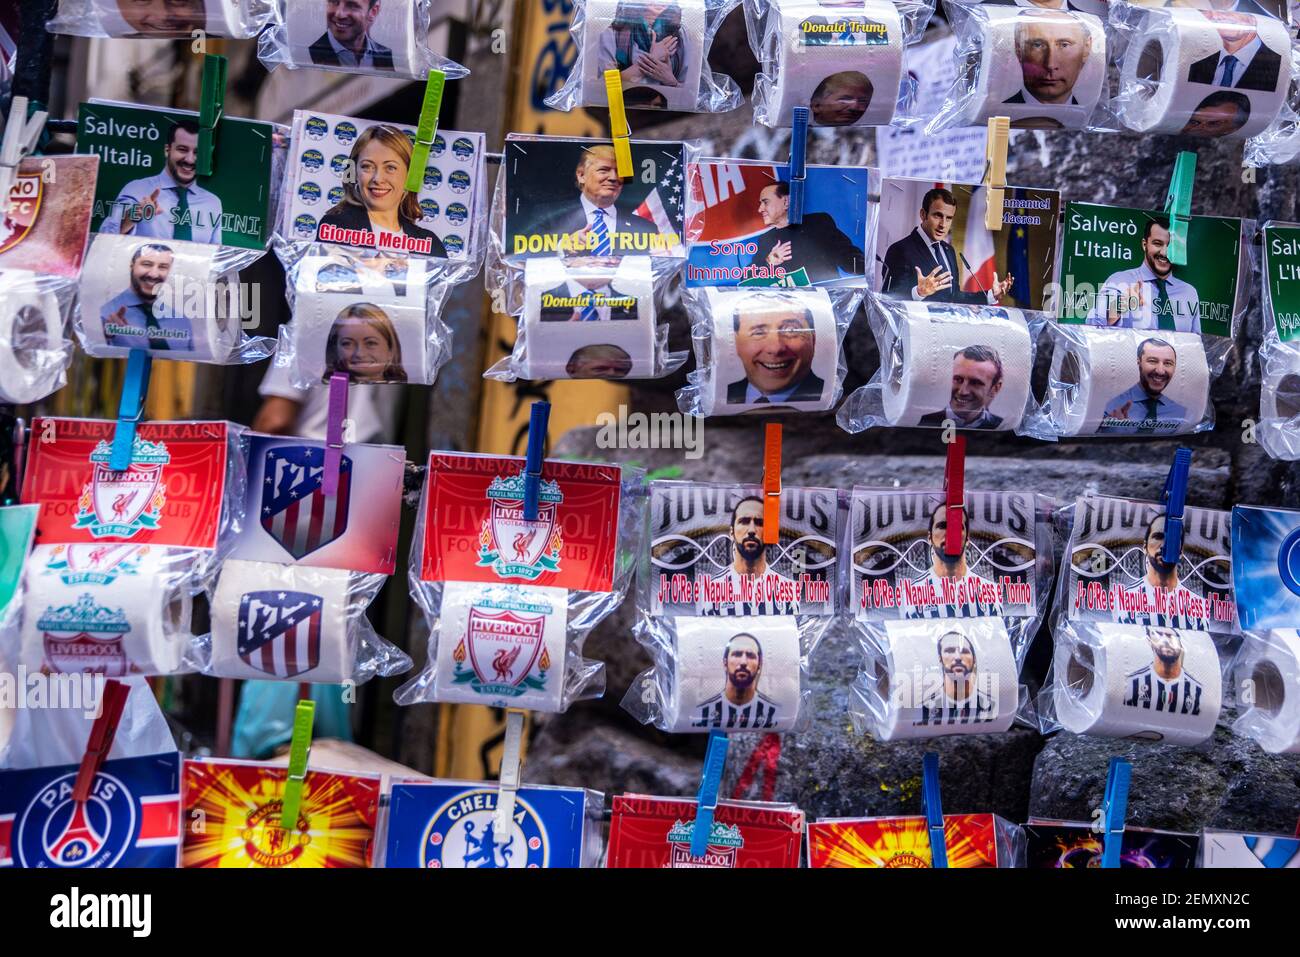 Naples, Italie - 9 septembre 2019 : papier toilette avec visages célèbres et équipes de football dans une boutique de souvenirs de la vieille ville de Naples, Italie Banque D'Images